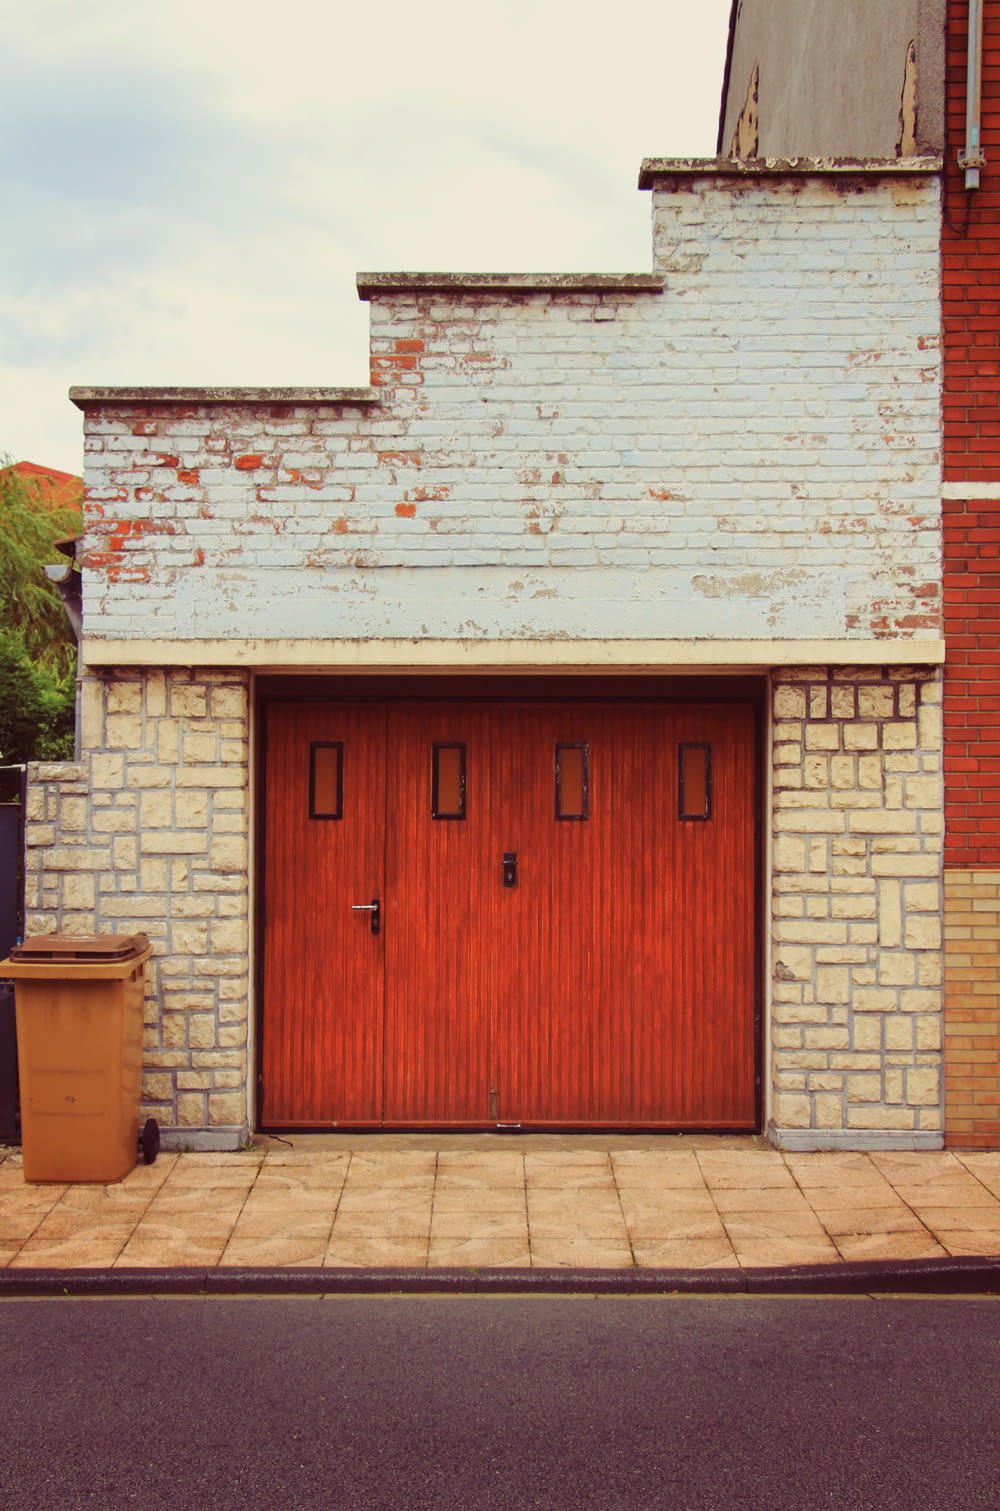 Un edificio di mattoni con una porta rossa e un bidone della spazzatura